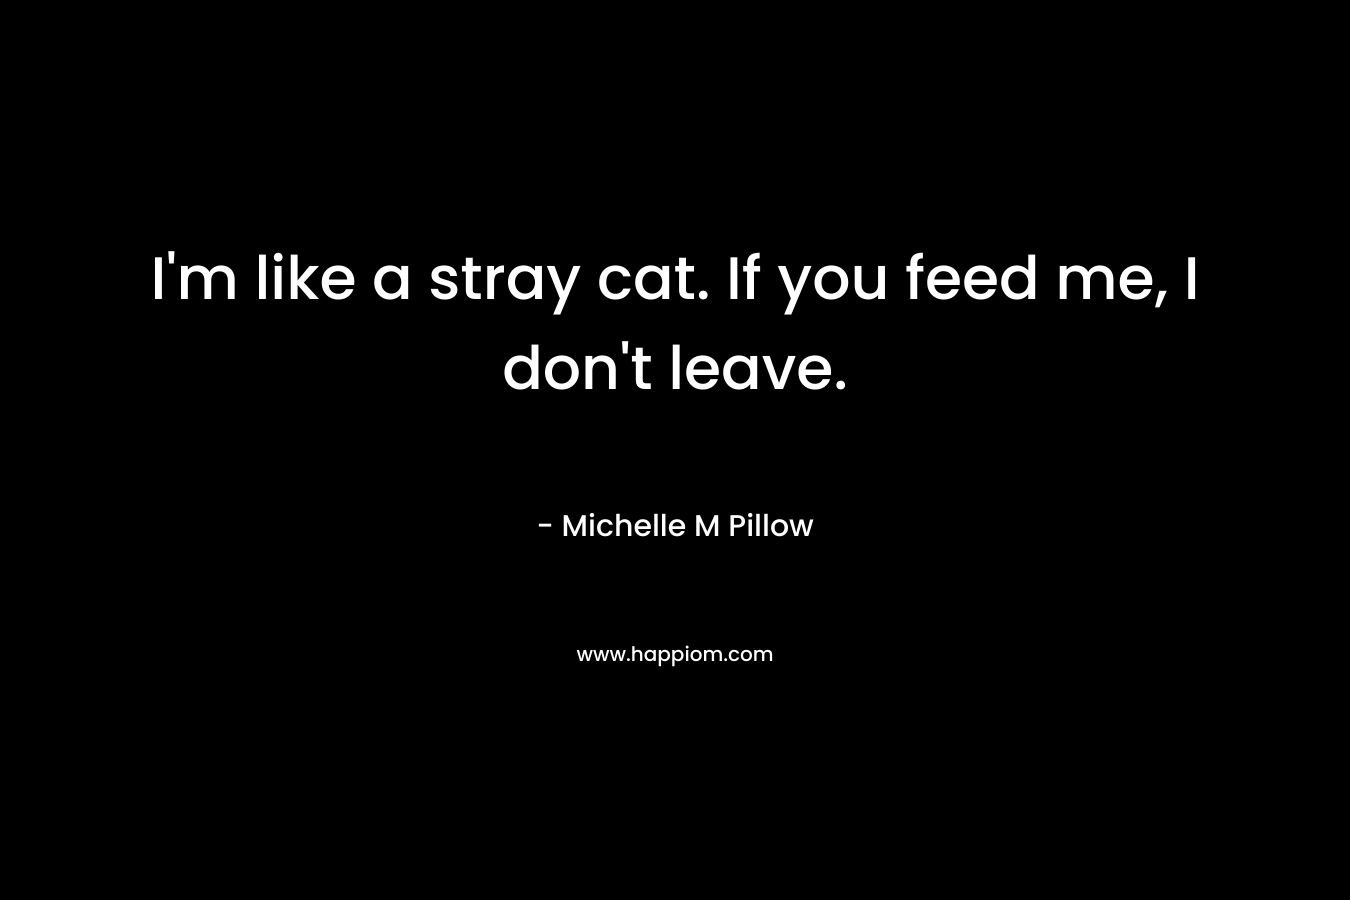 I'm like a stray cat. If you feed me, I don't leave.